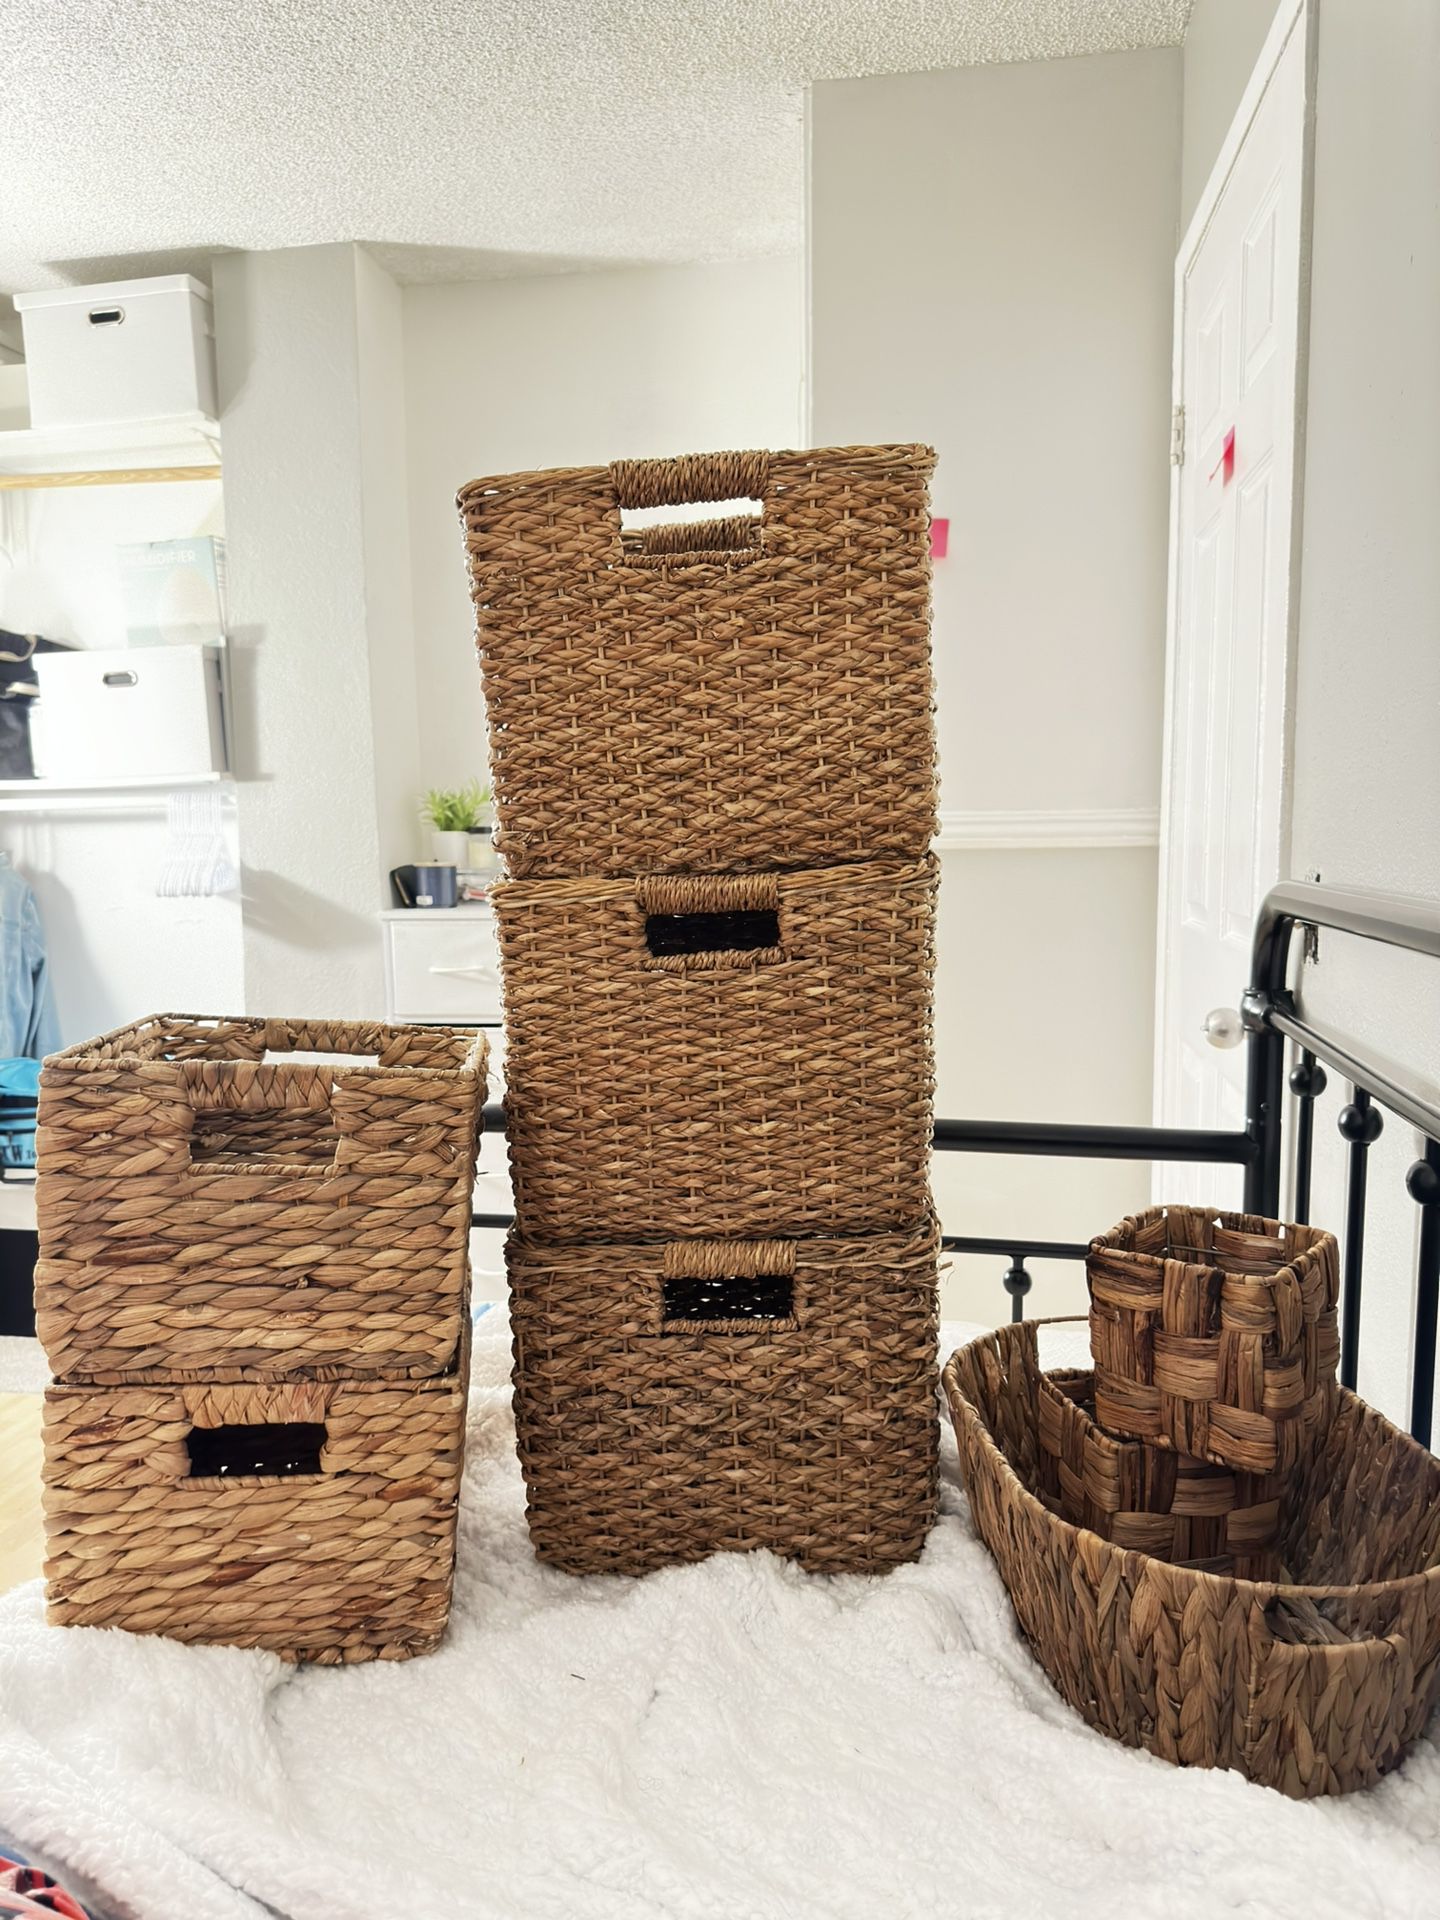 Wicker basket Storage ! All For 60$